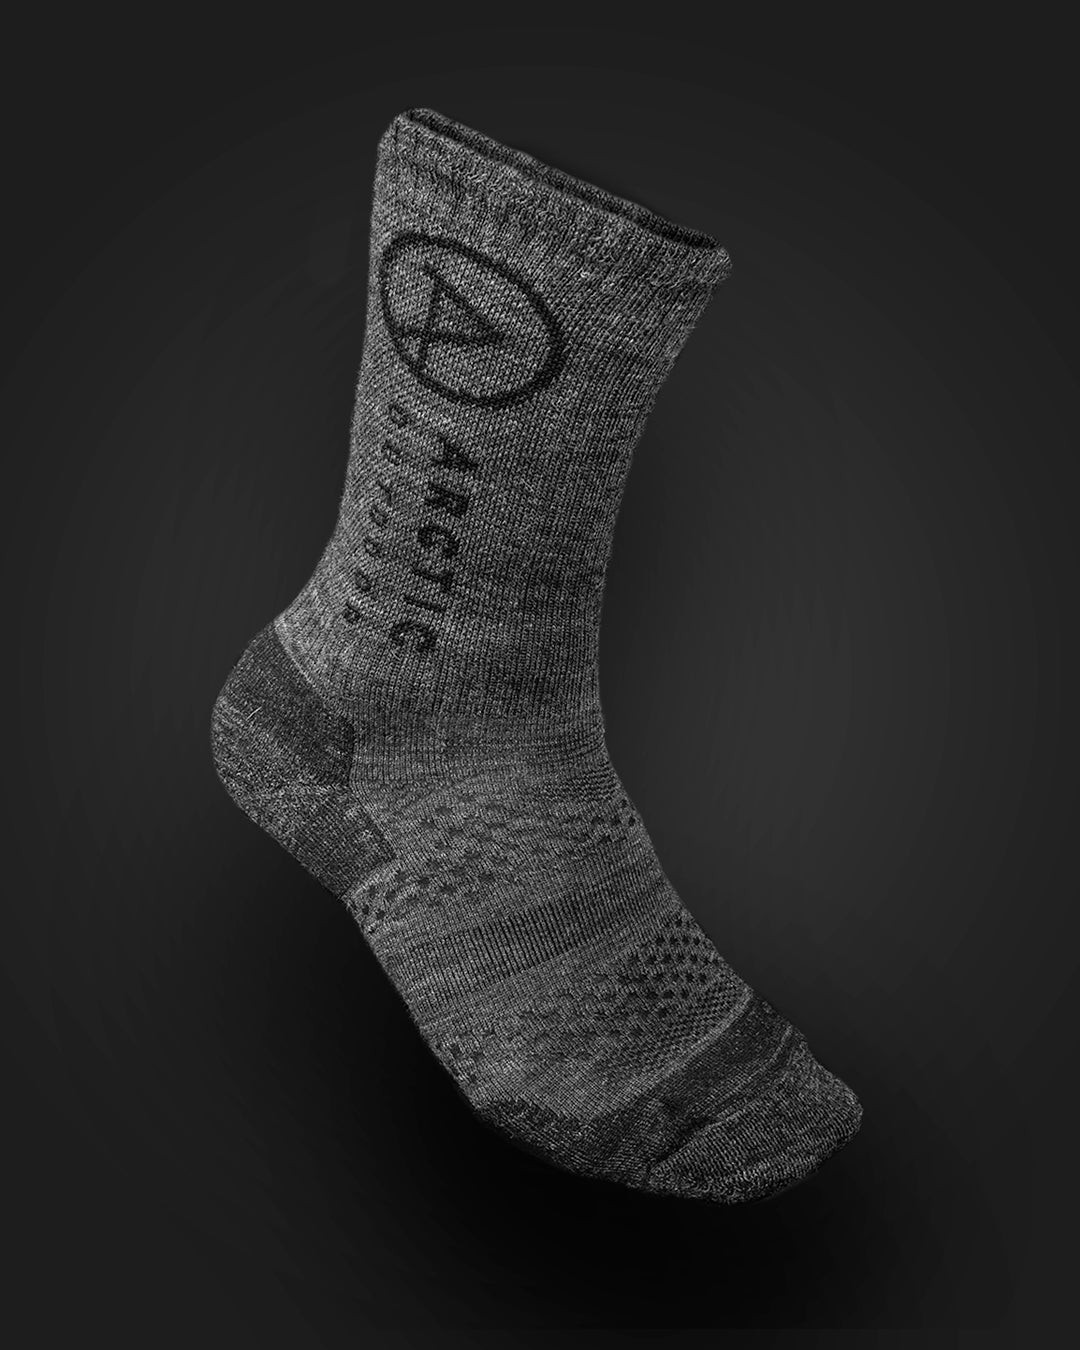 Produktbillede af mørkegrå sokker i merinould 